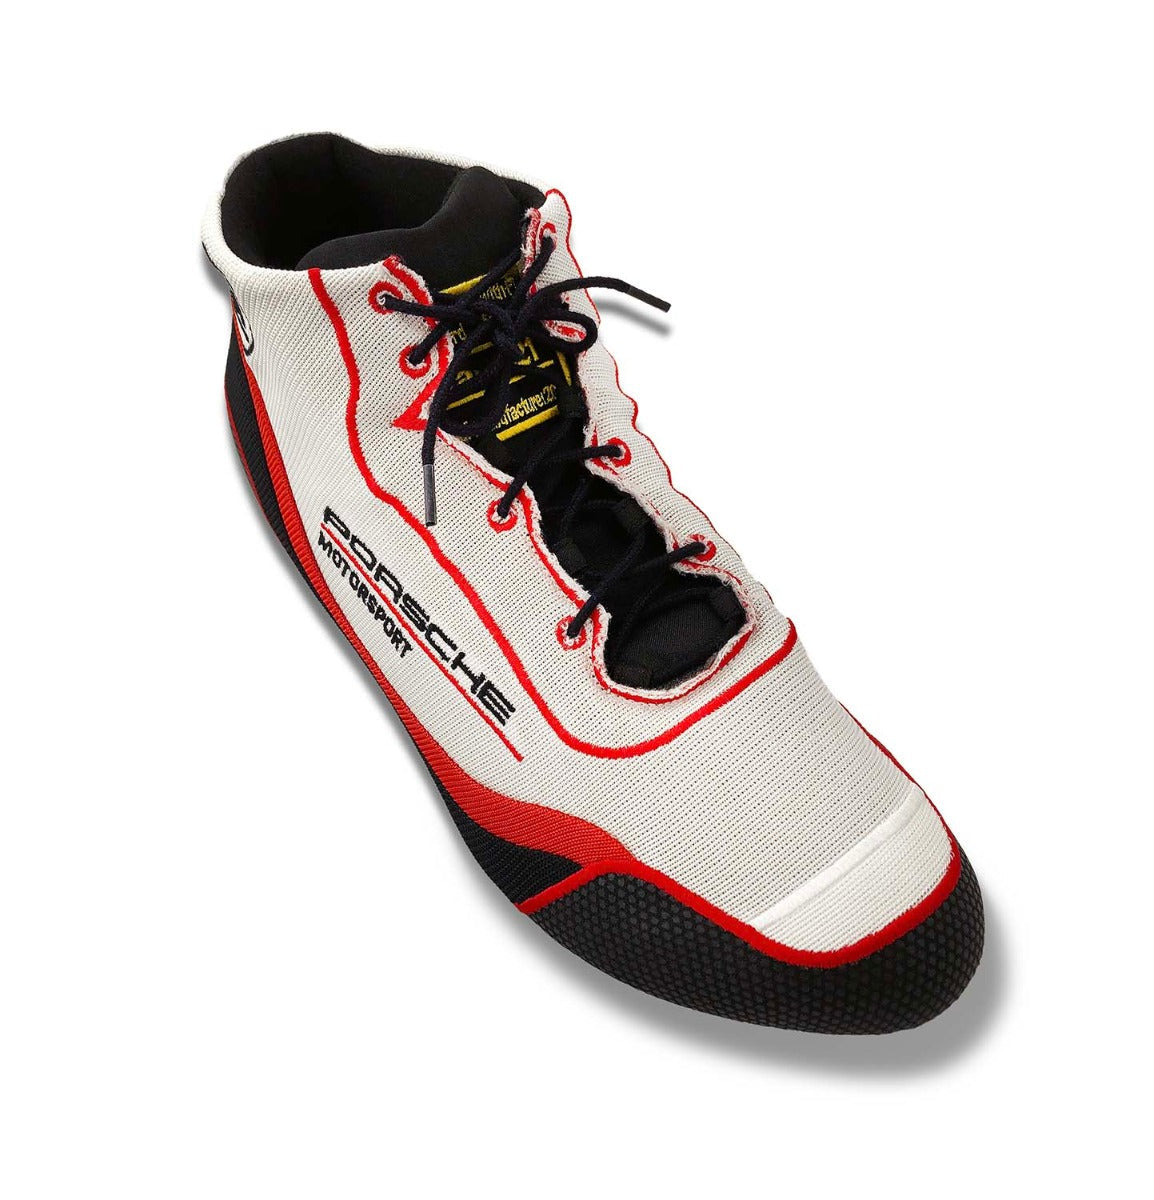 Stand21 Porsche Motorsport Air-S Speed Racing Shoe